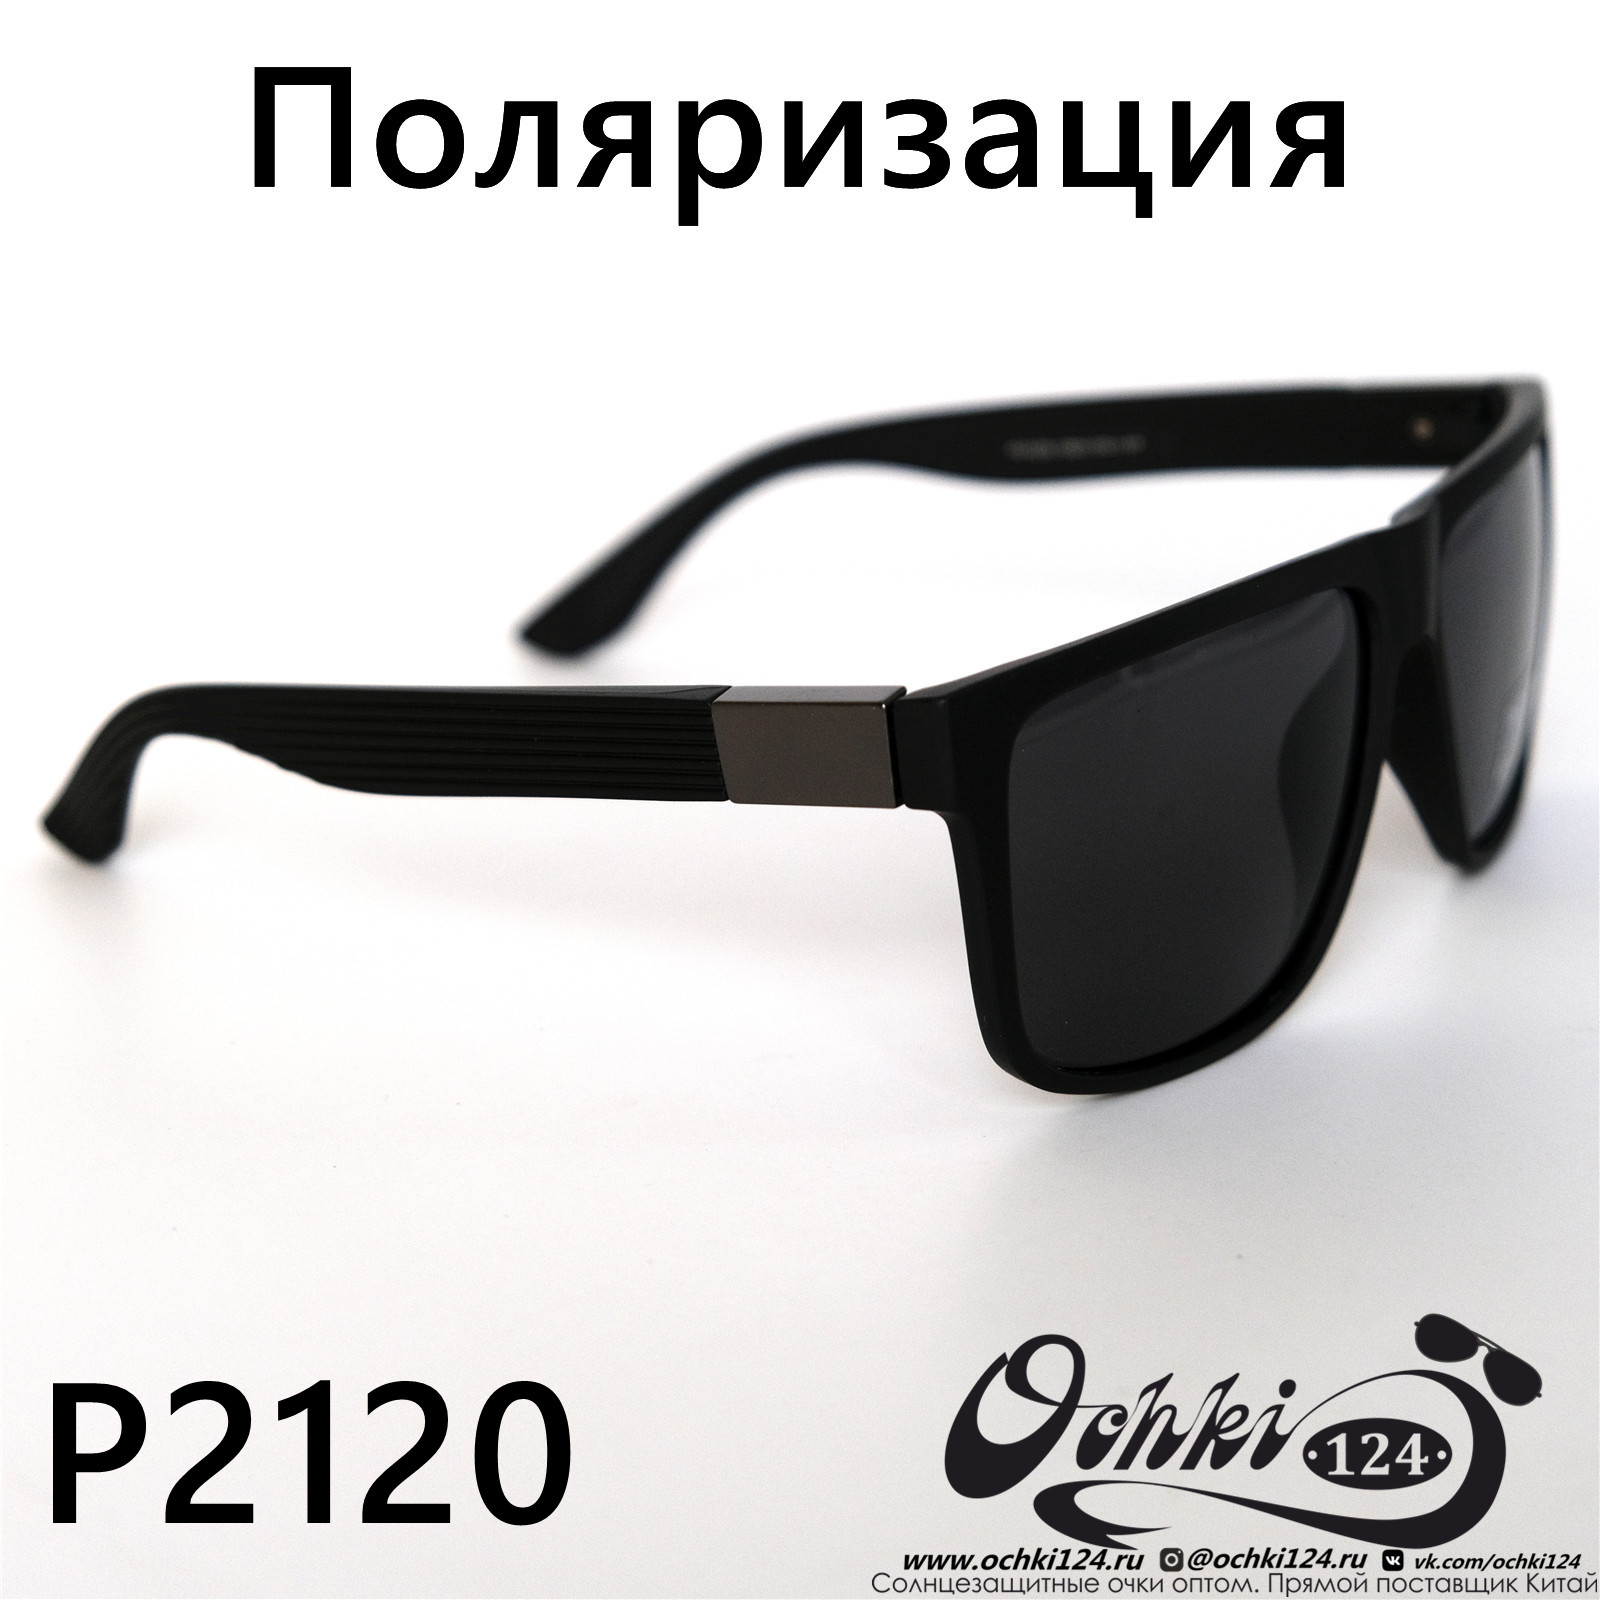  Солнцезащитные очки картинка 2022 Мужские Квадратные Polarized P2120-2 